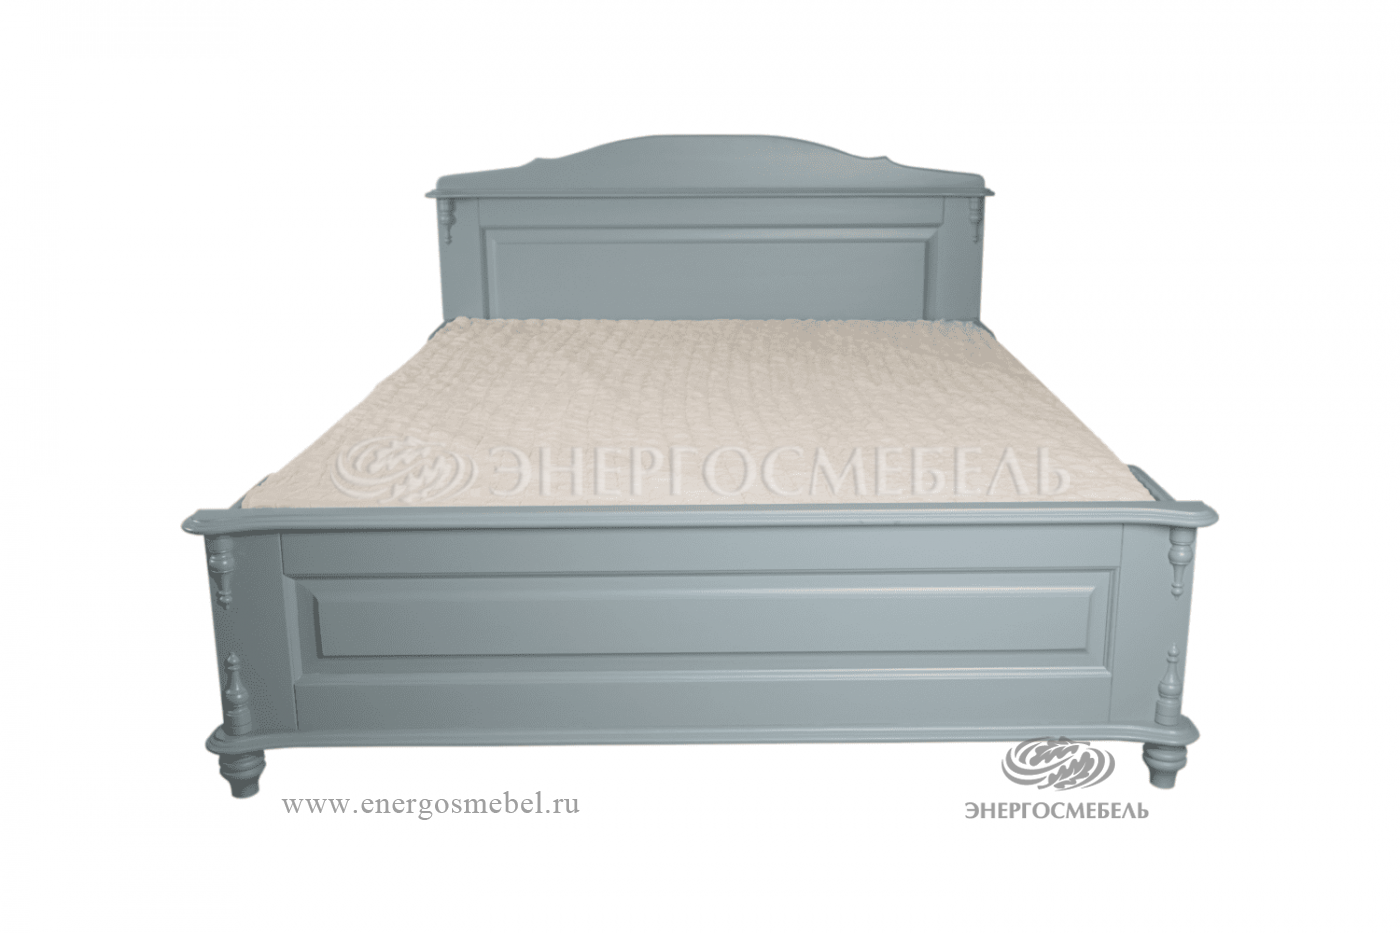 Кровать Скандия двойная (1600х2000) низкое изножье